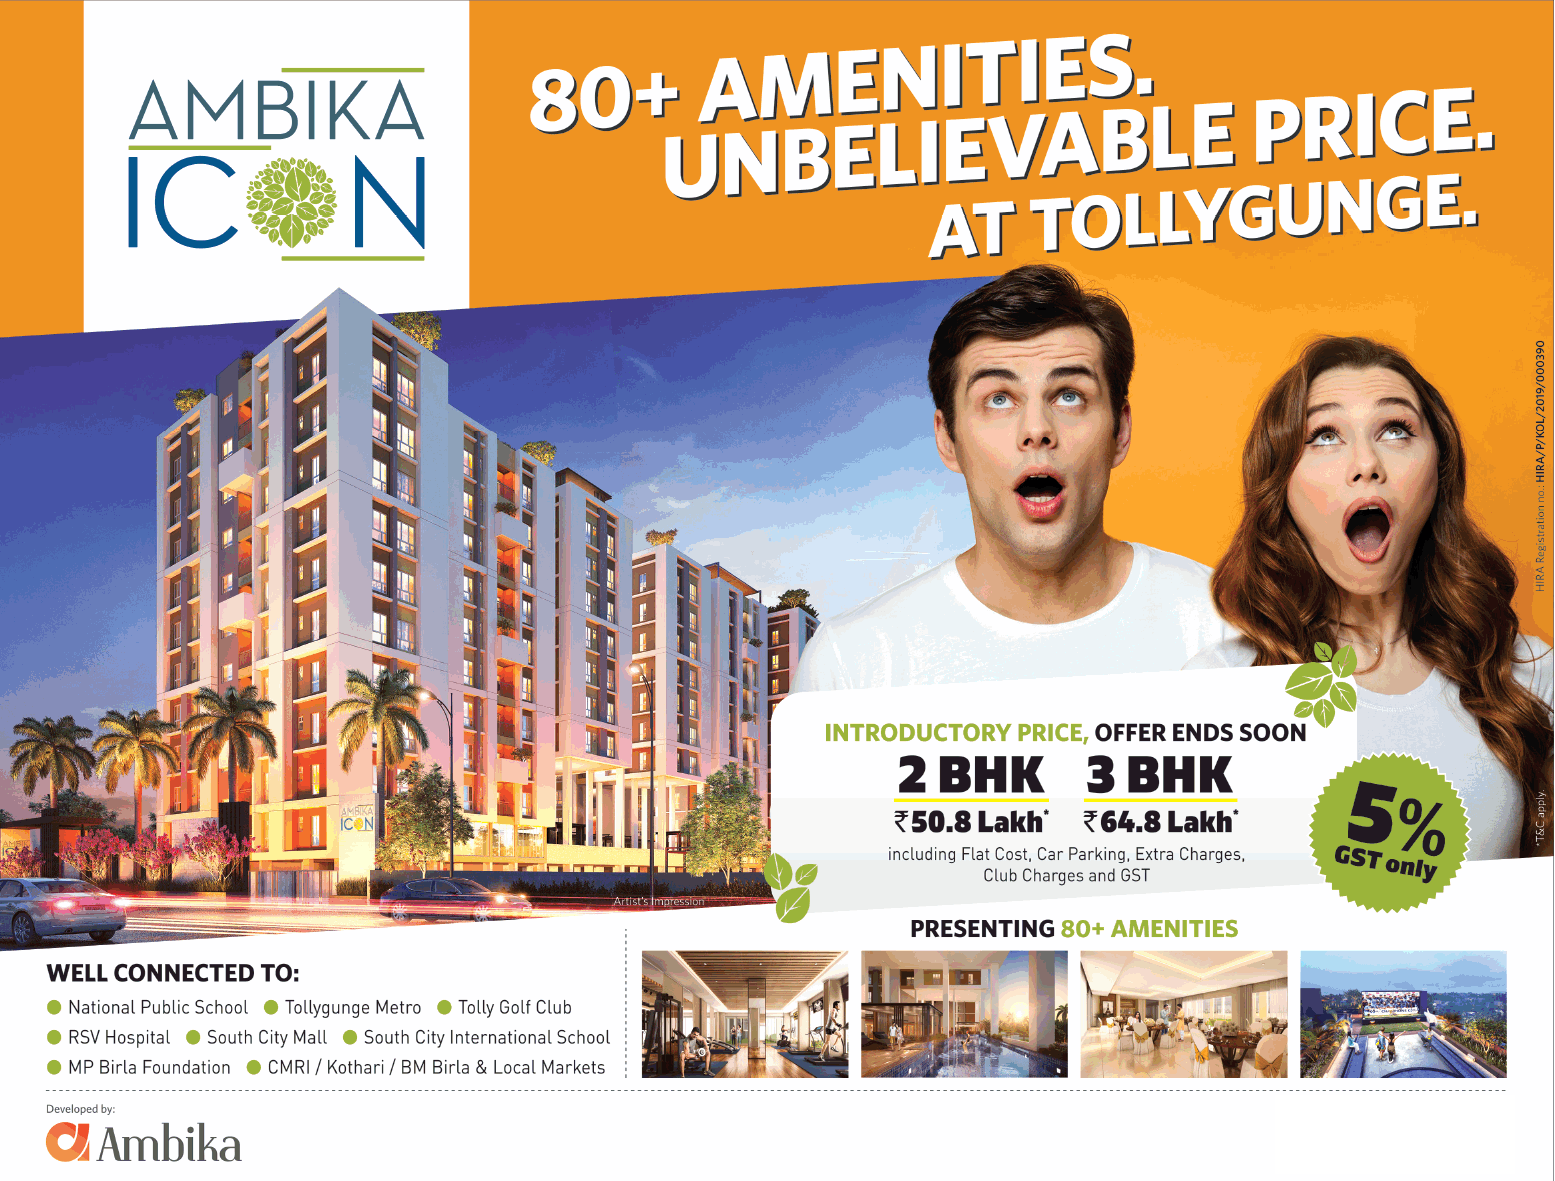 Presenting 80+ amenities at Ambika Icon in Kolkata